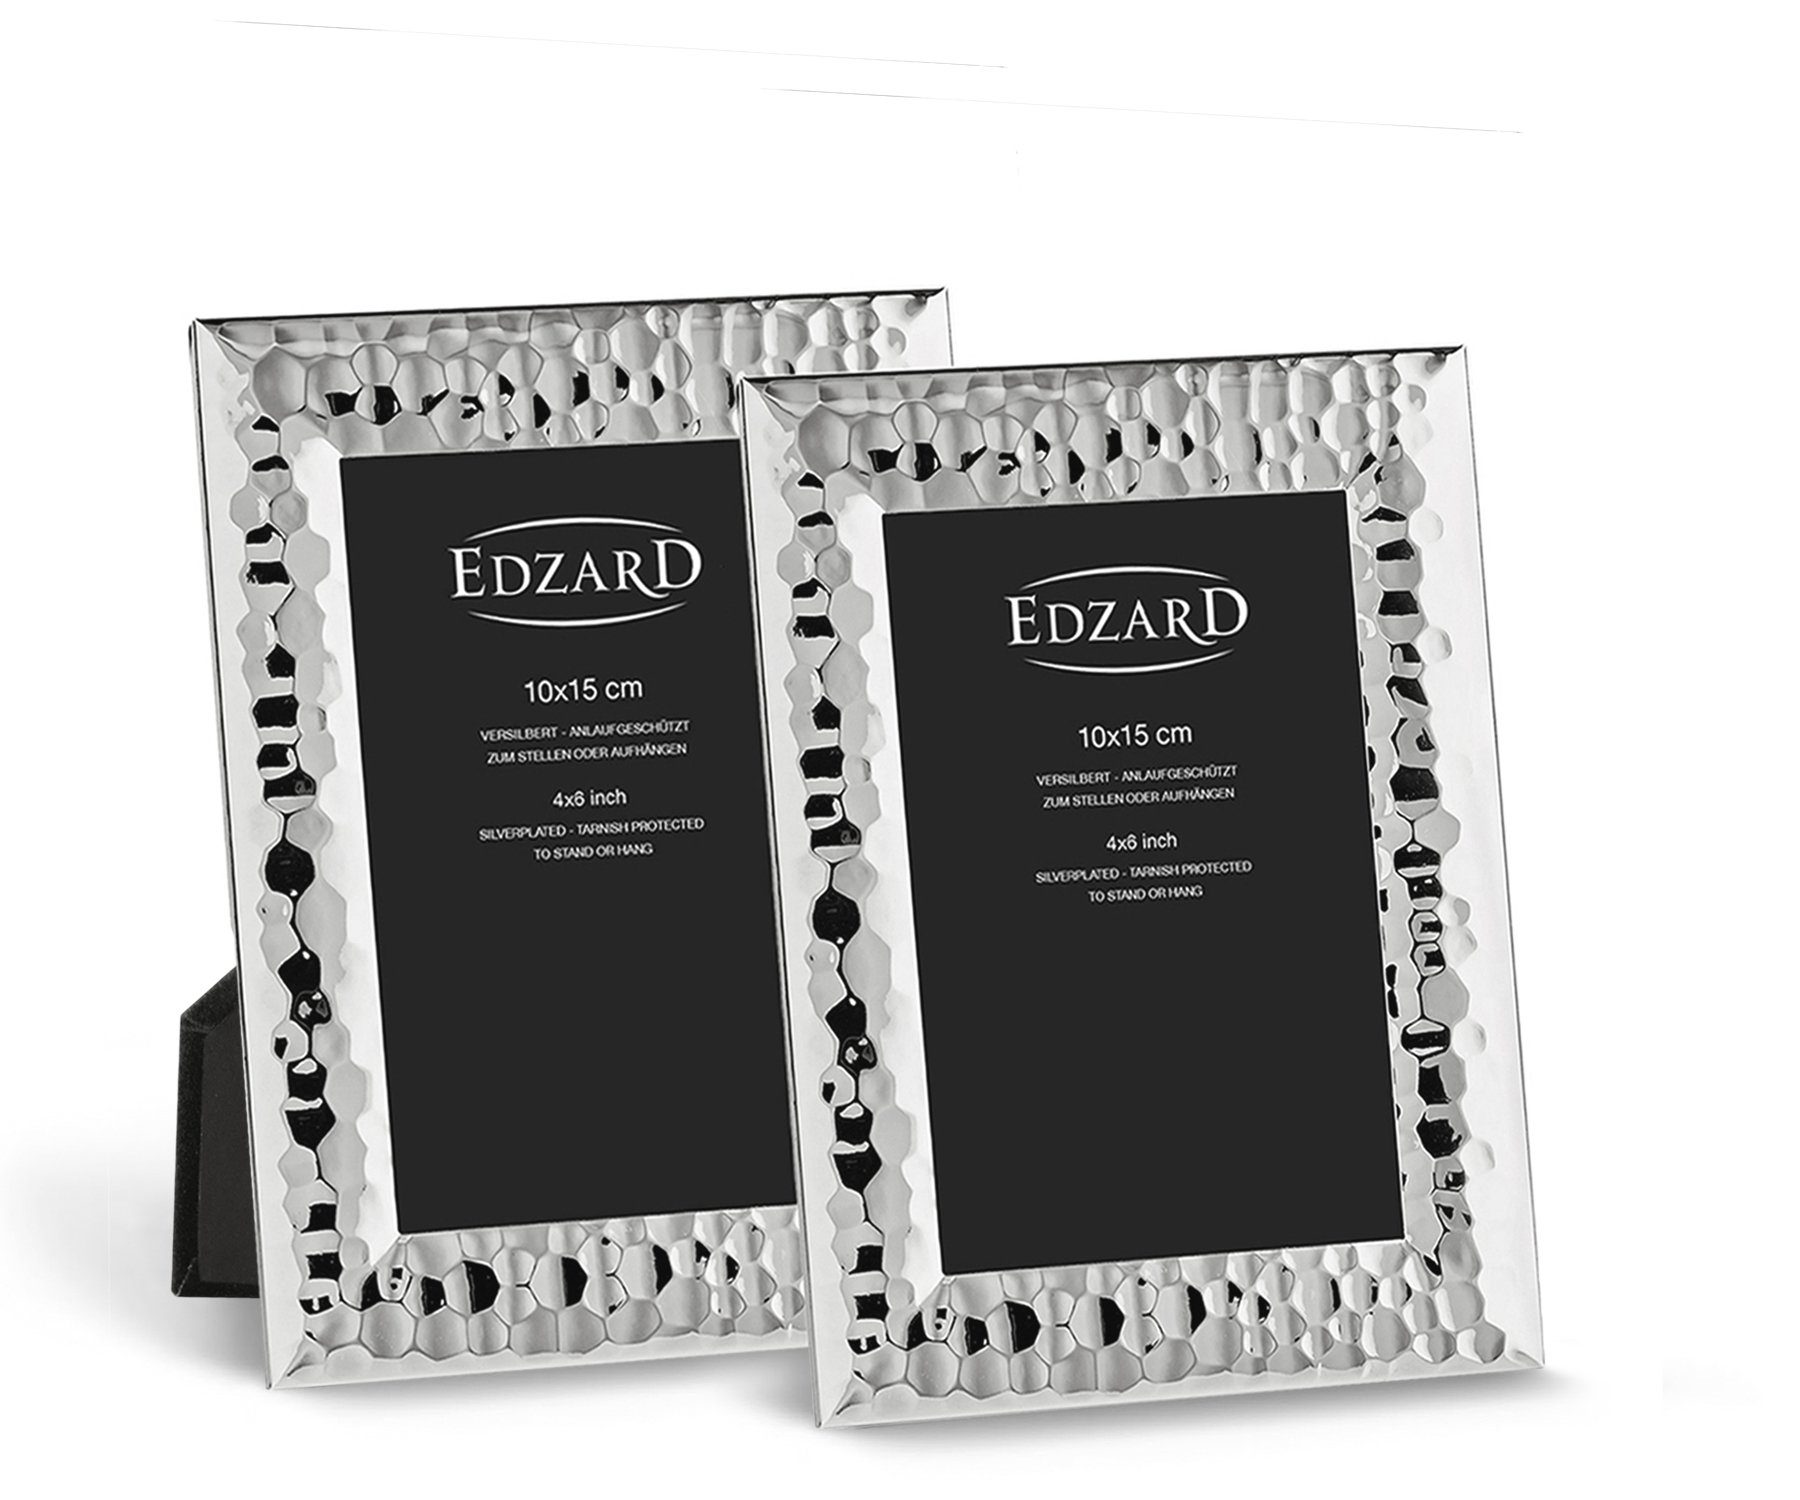 EDZARD Bilderrahmen Gubbio, versilbert und anlaufgeschützt, 2er Set für 10x15 cm Foto